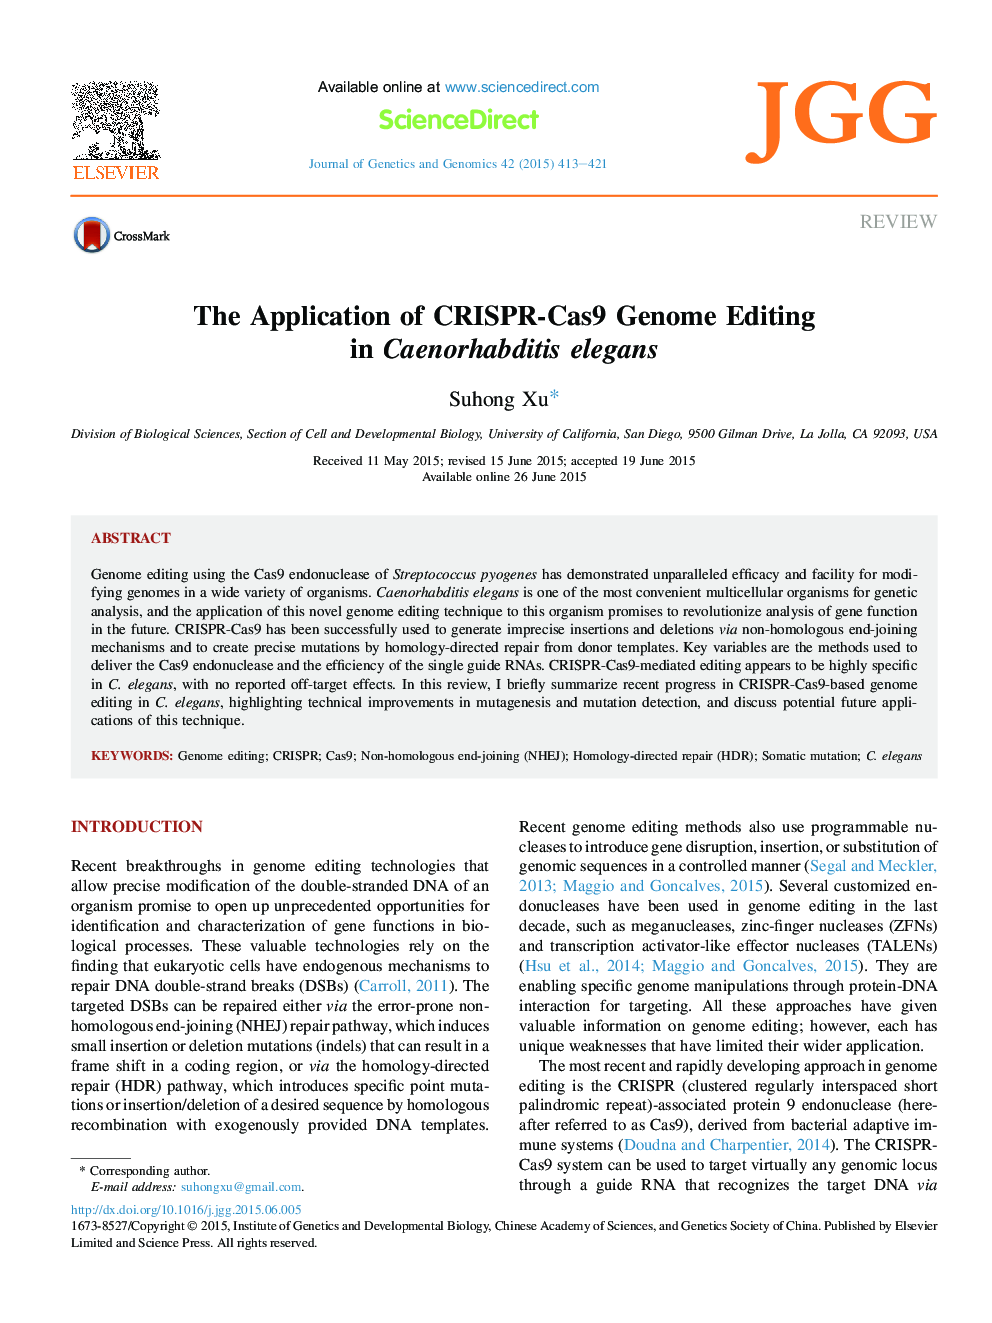 The Application of CRISPR-Cas9 Genome Editing in Caenorhabditis elegans